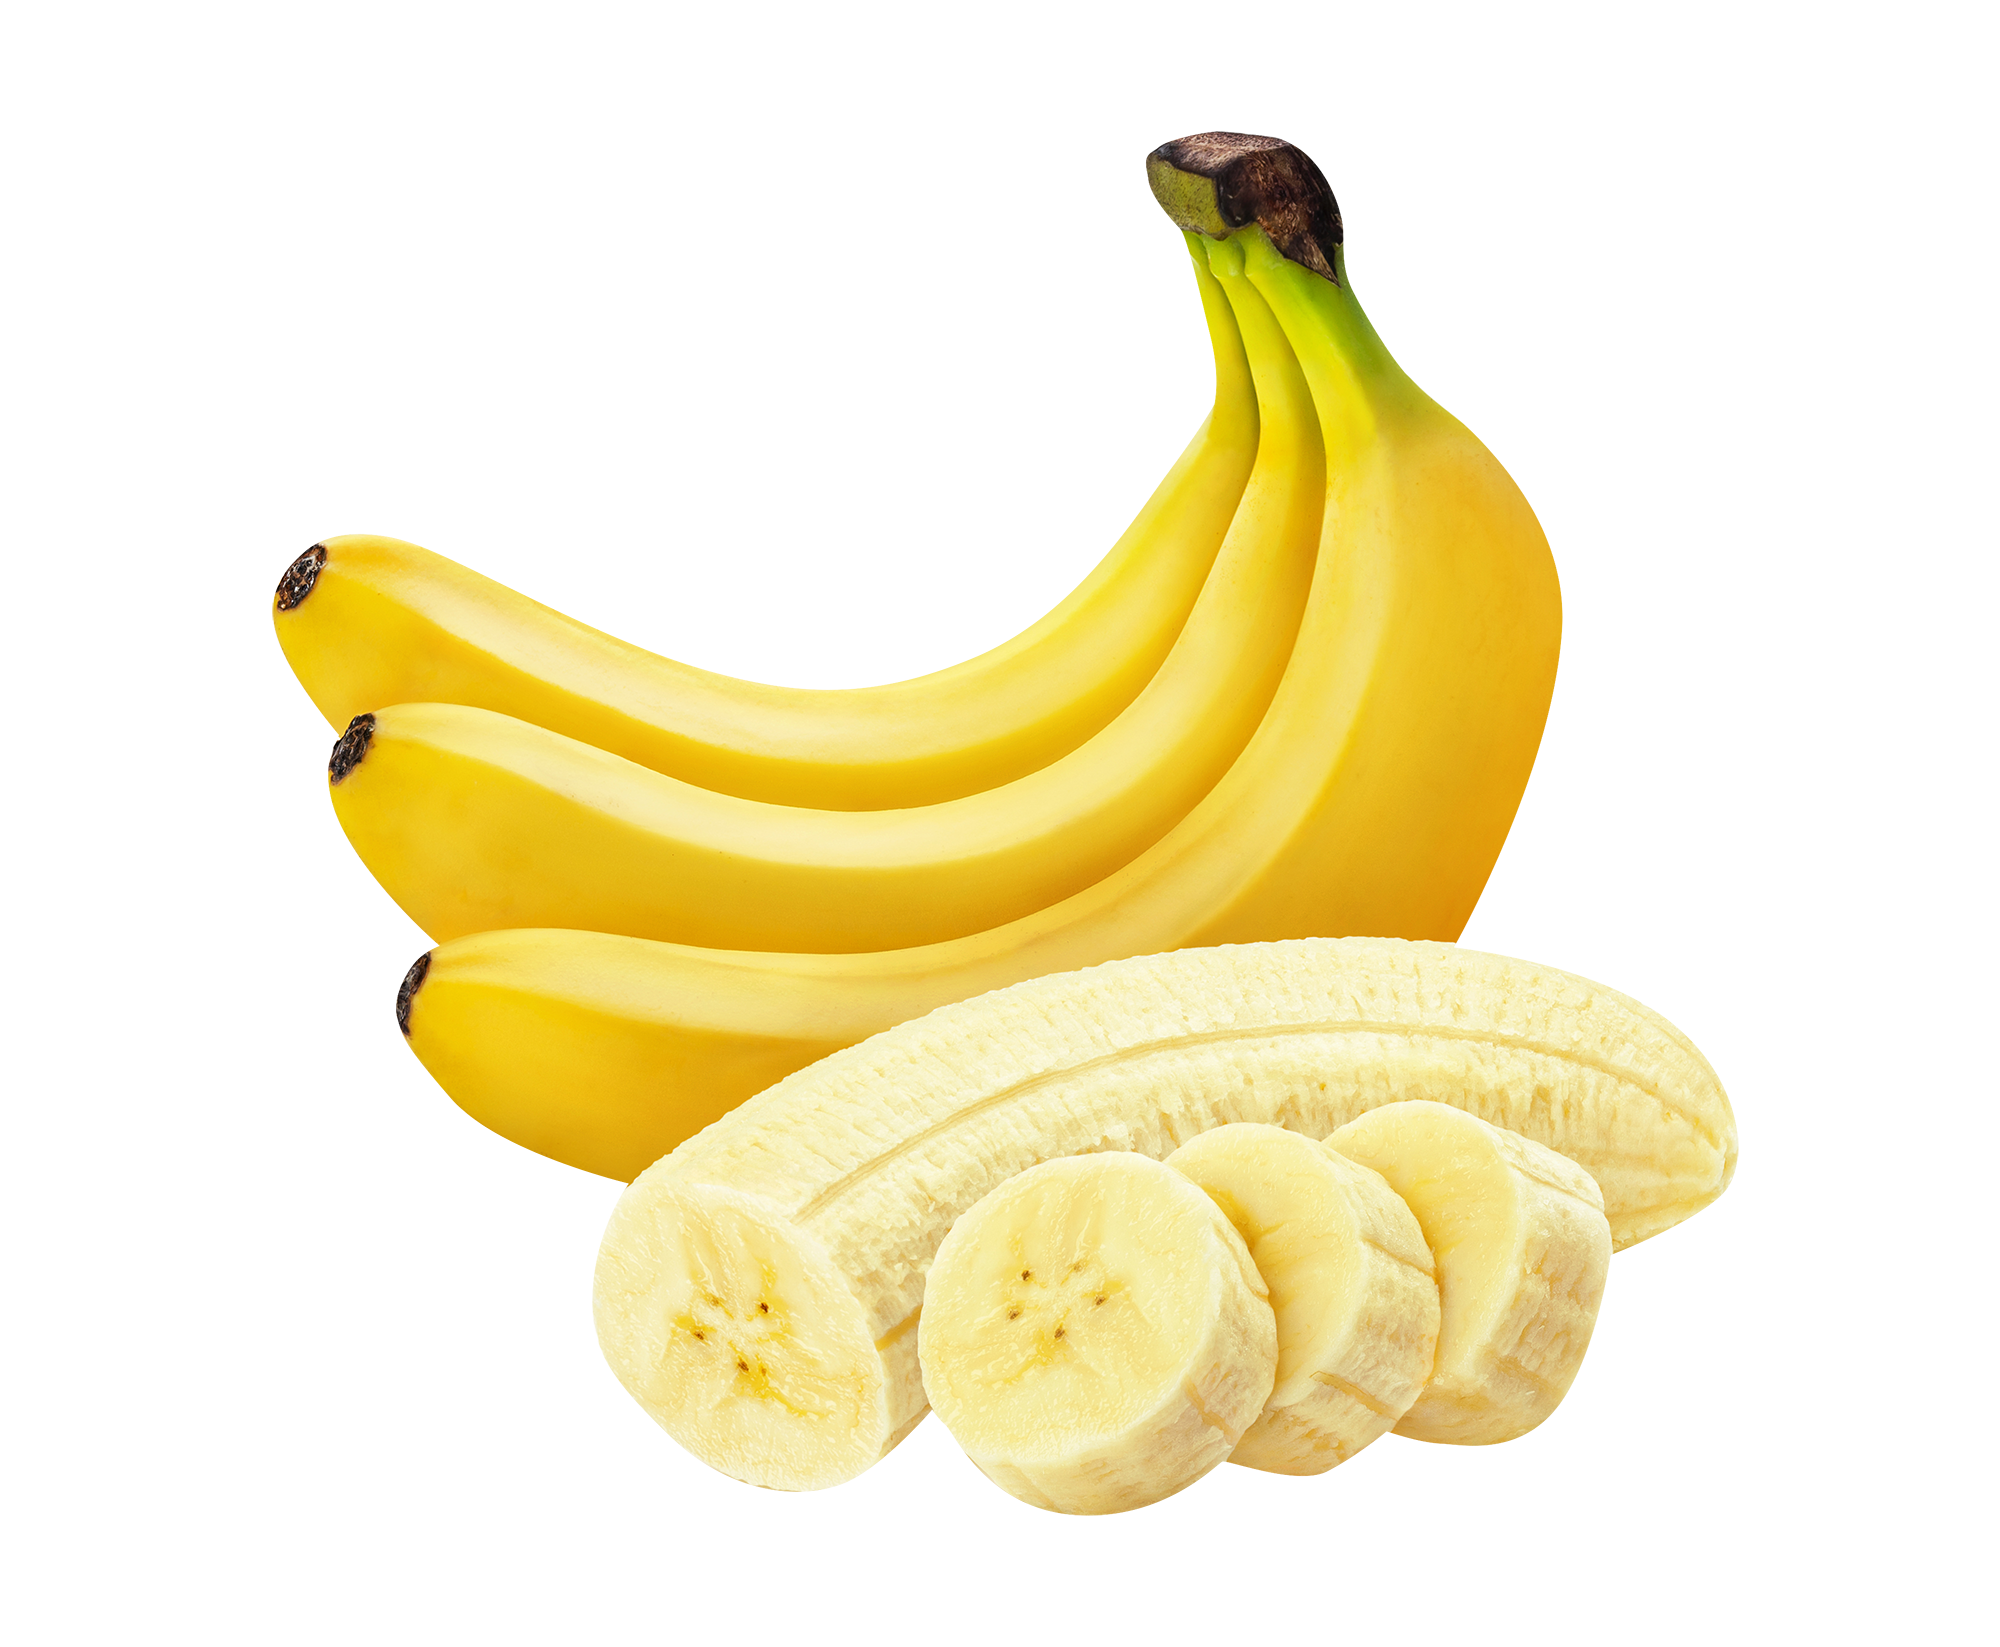 Muz v. Кавендиш банан. Банан на белом фоне. Желтый банан. Сочный банан.